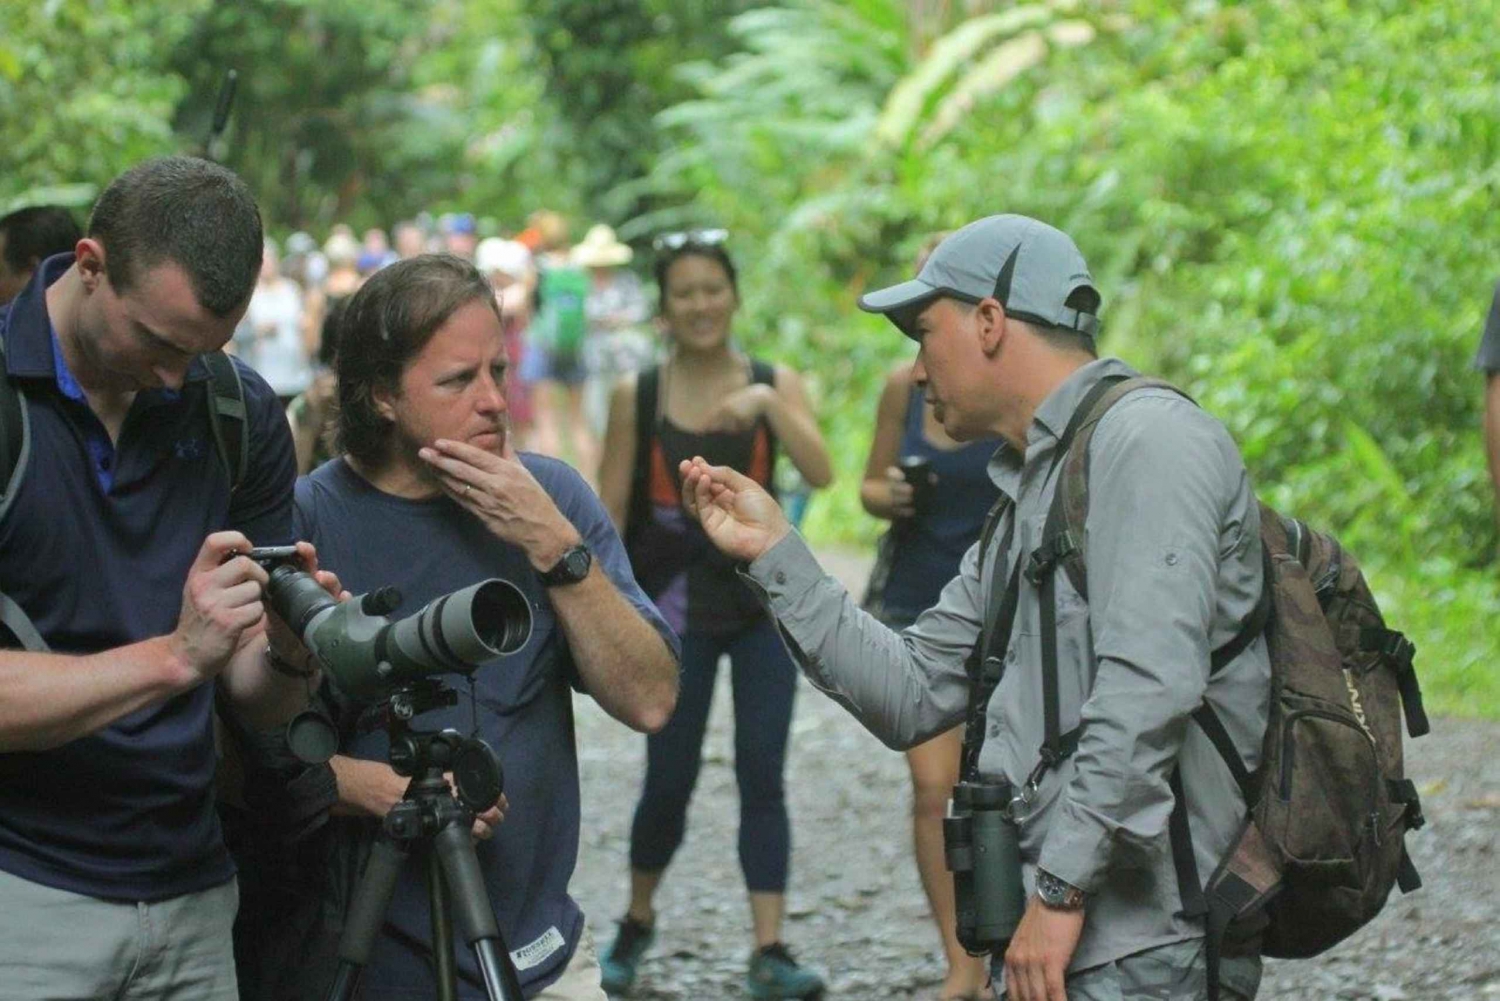 Costa Rica : Visite guidée du parc national de Manuel Antonio